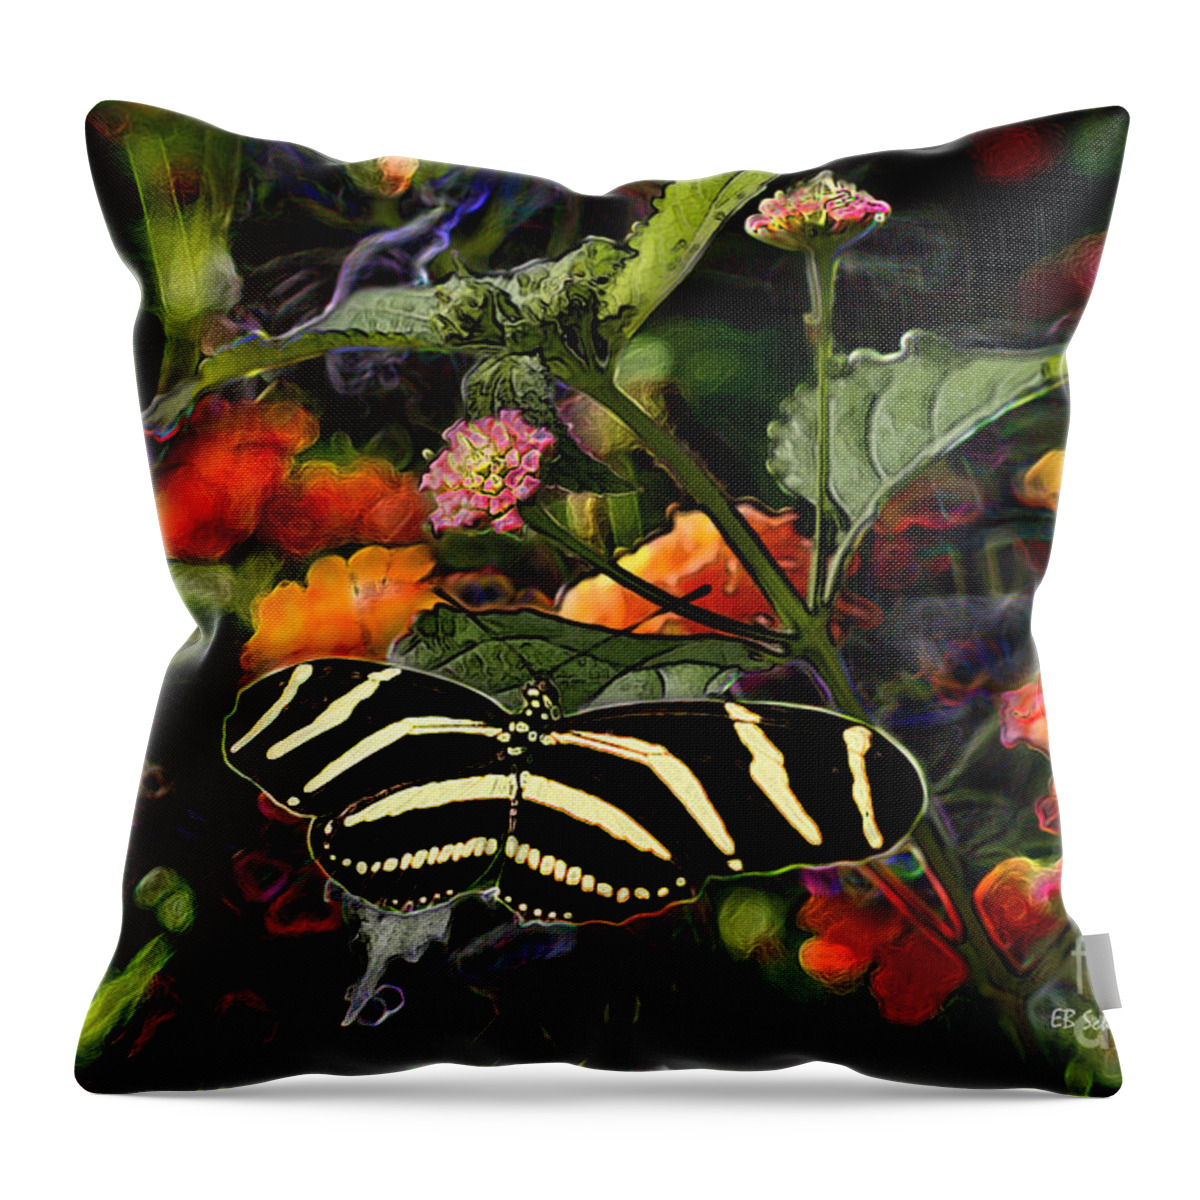 Butterfly Garden Throw Pillow featuring the digital art Butterfly Garden 14 - Zebra Heliconian by E B Schmidt